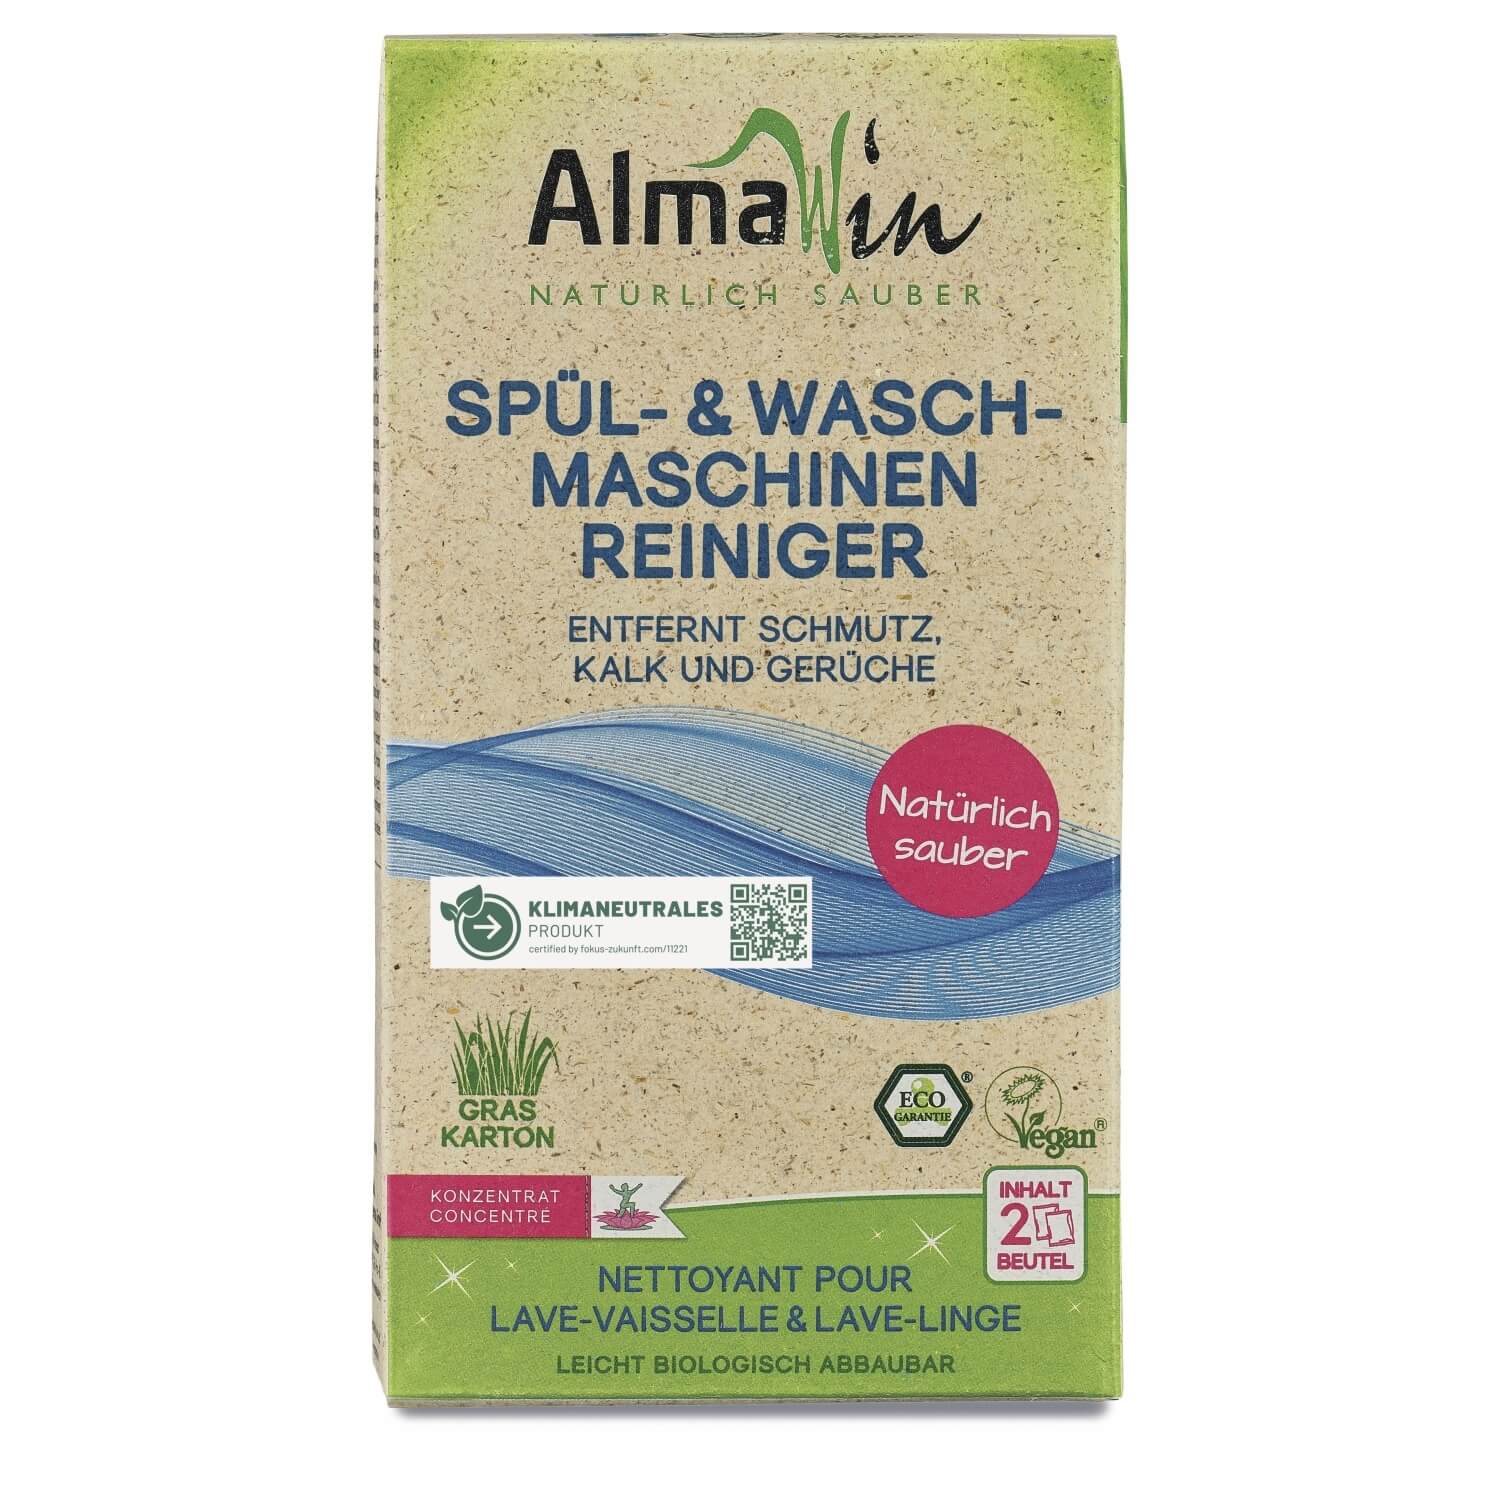 AlmaWin Spül- und Waschmaschinen Reiniger, 200 g